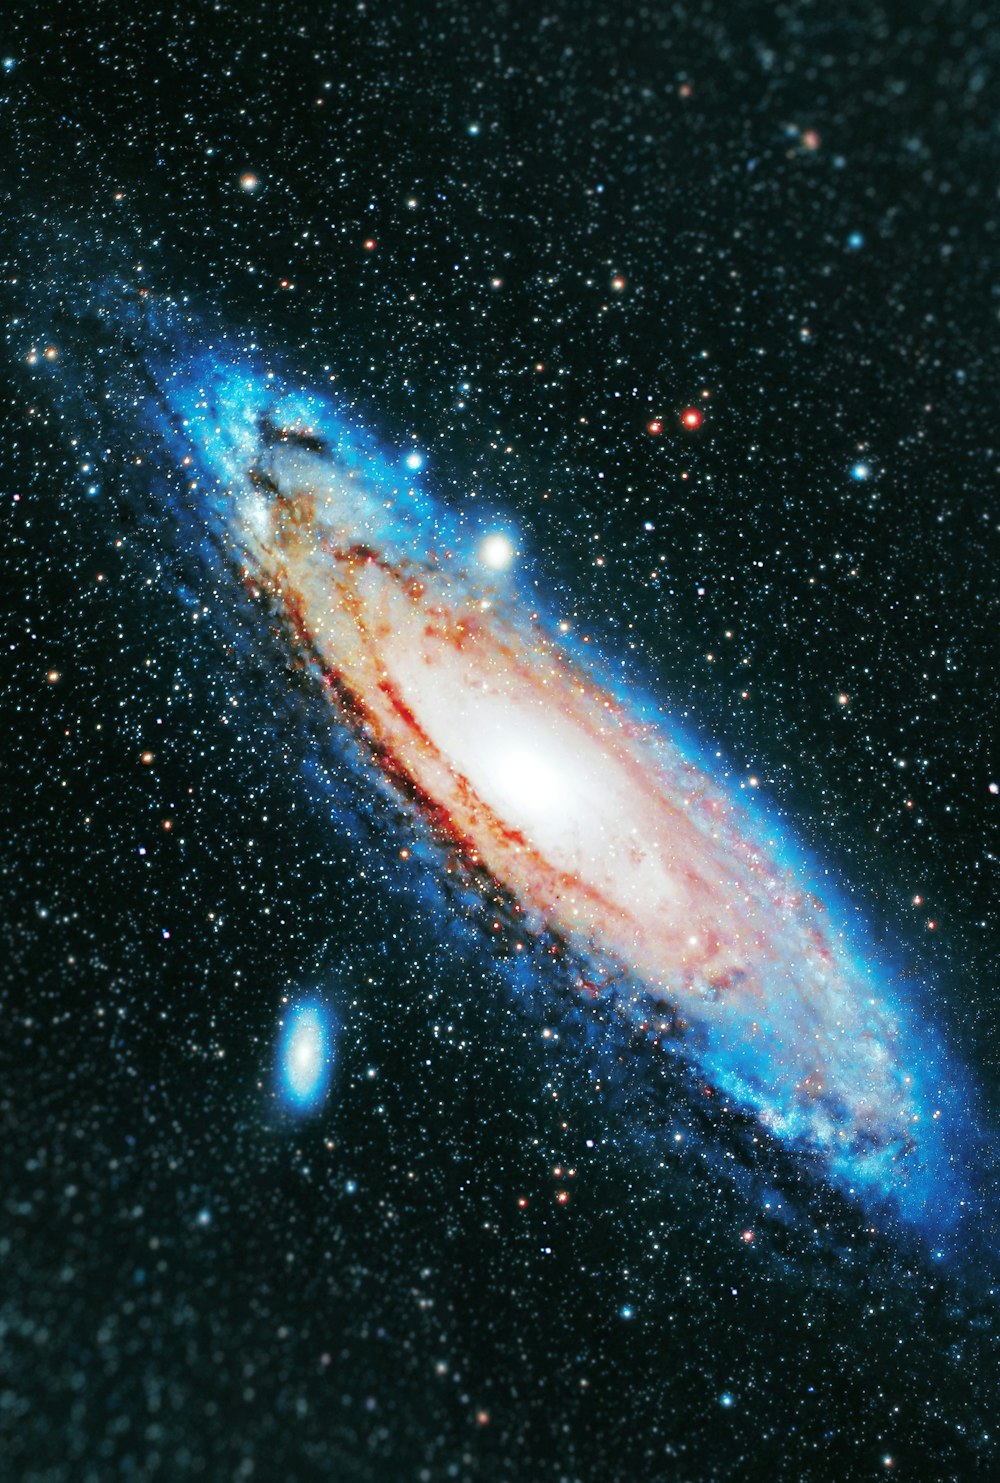 Bạn đã bao giờ tò mò về Thiên hà Andromeda - một ngôi sao rực rỡ giữa vũ trụ, với hàng tỷ vì sao sáng lấp lánh, và là nơi sinh sống của nhiều thiên hà khác? Hãy đến và khám phá hình ảnh đẹp của Thiên hà Andromeda để trải nghiệm một hành trình tuyệt vời đến với không gian bao la và đầy bí ẩn này.